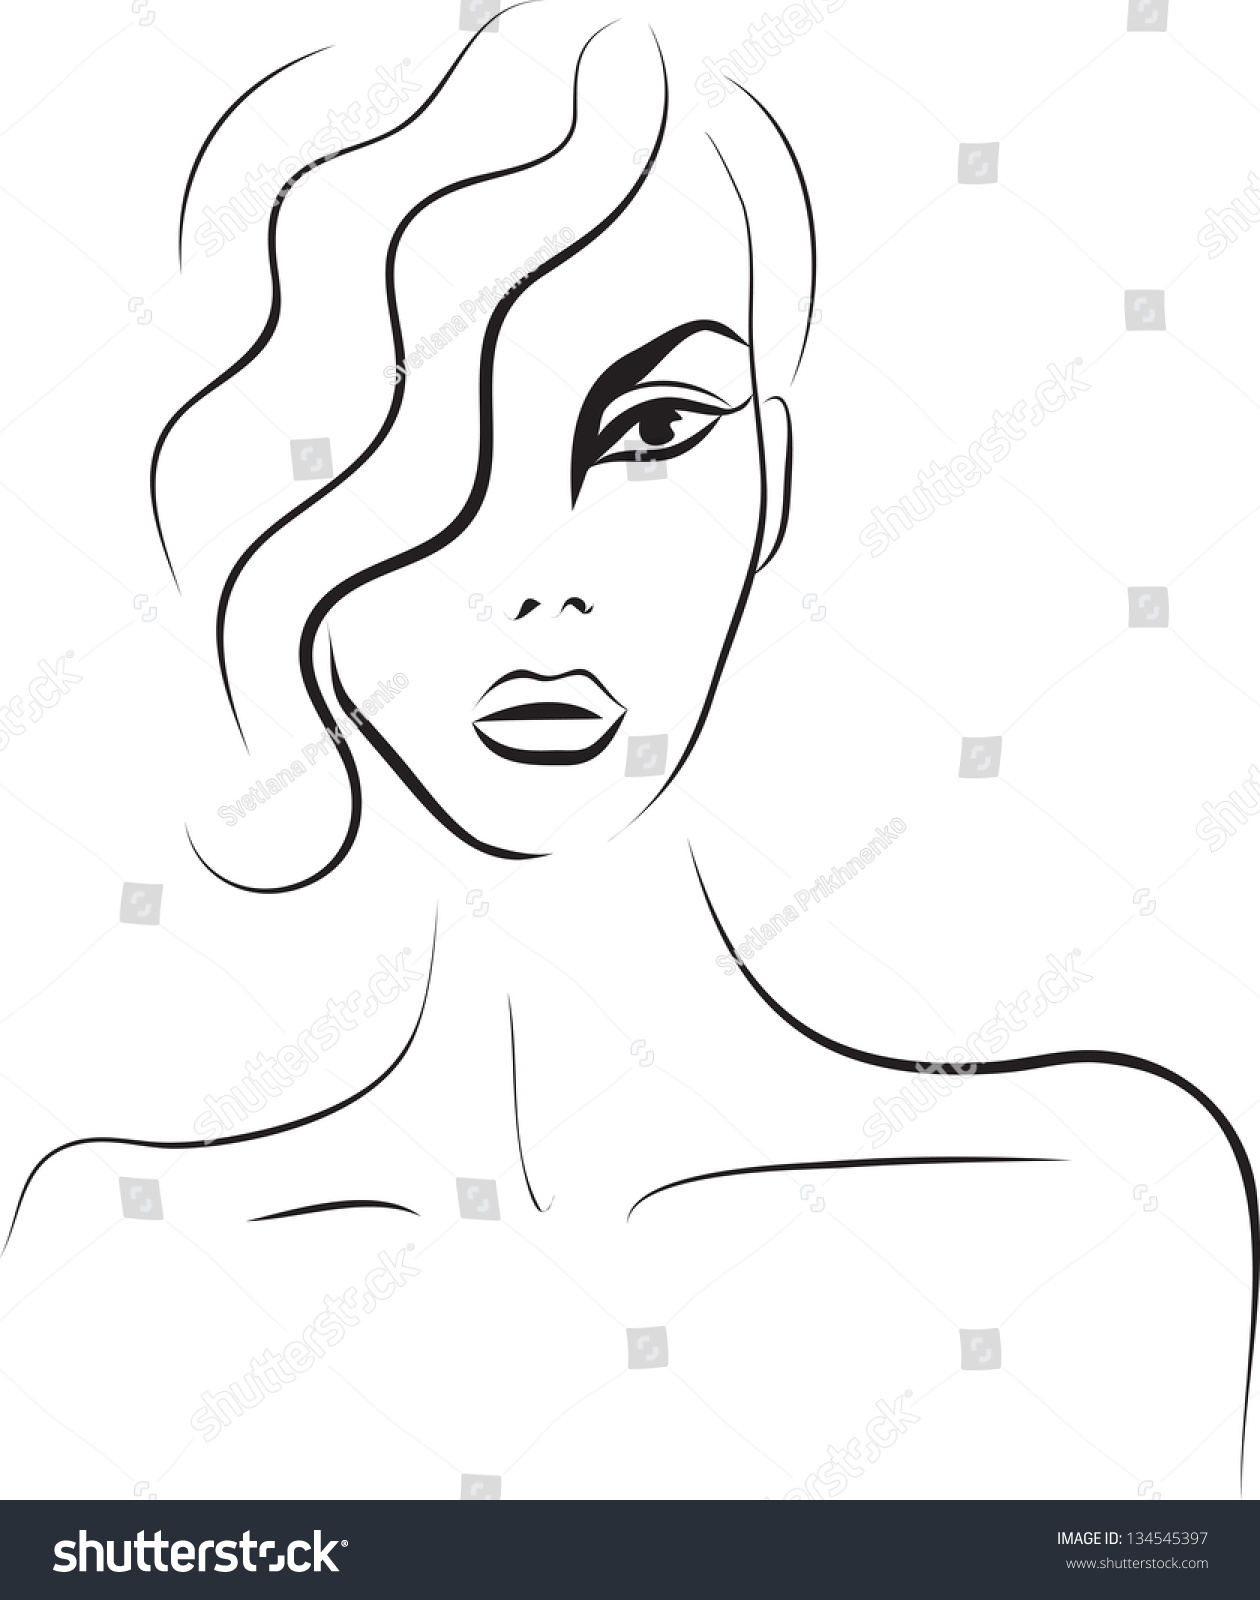 Beautiful Woman Face. Fashion Sketch Stock Photo 134545397 : Shutterstock